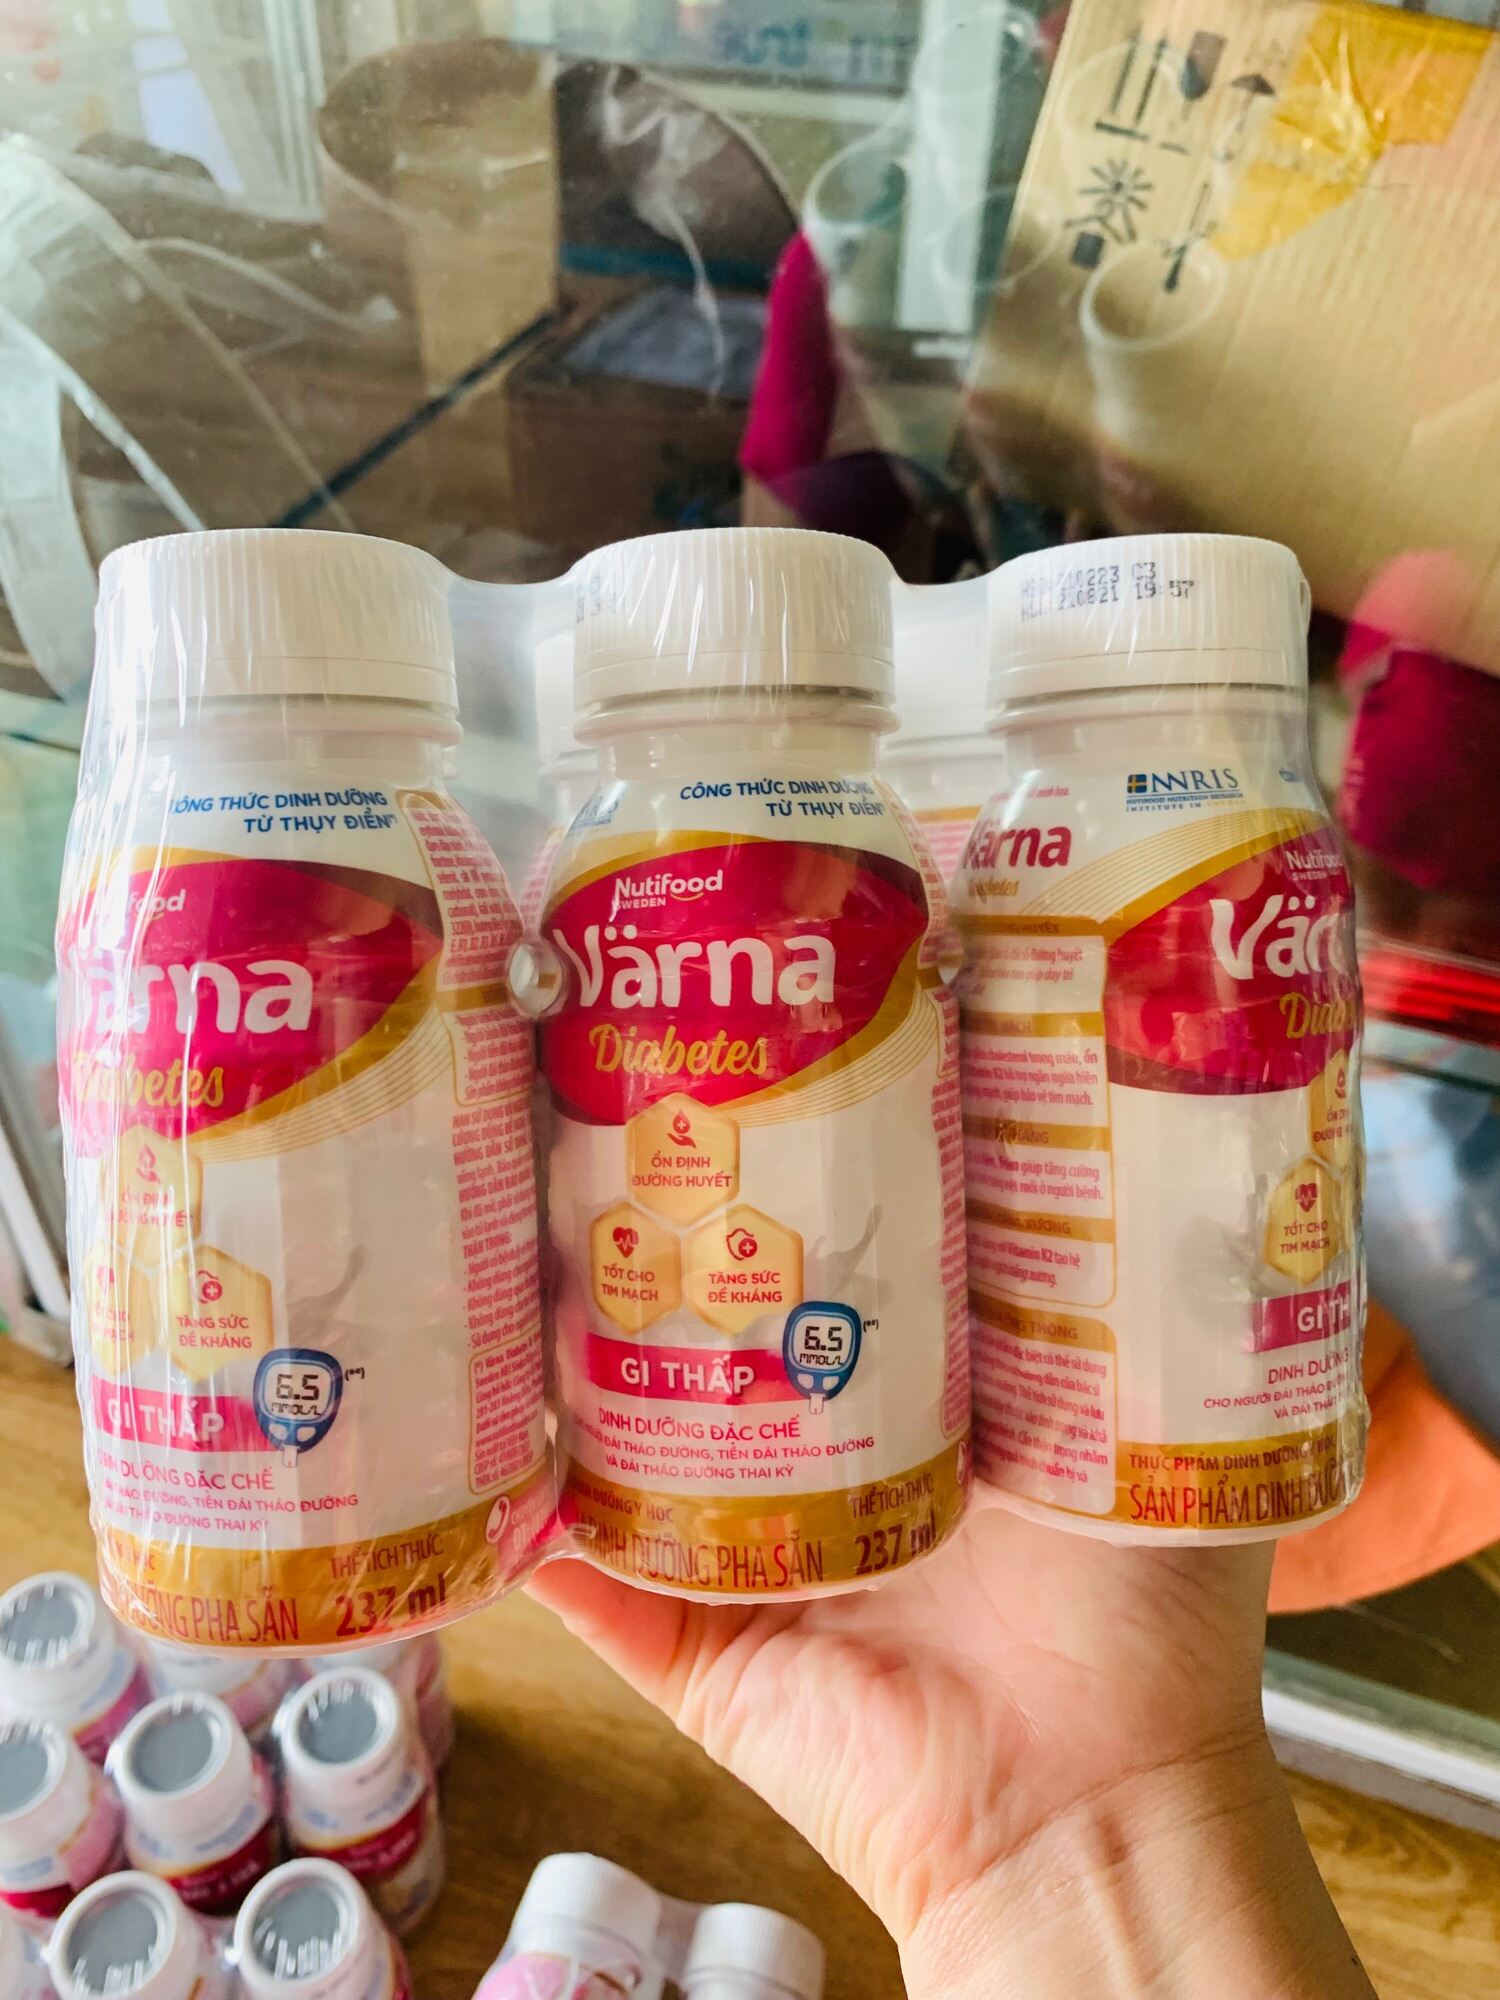 [ HOÀN TIỀN 10% ]Lốc 6 chai Sữa bột pha sẵn Varna 237ml dành cho người tiểu đường